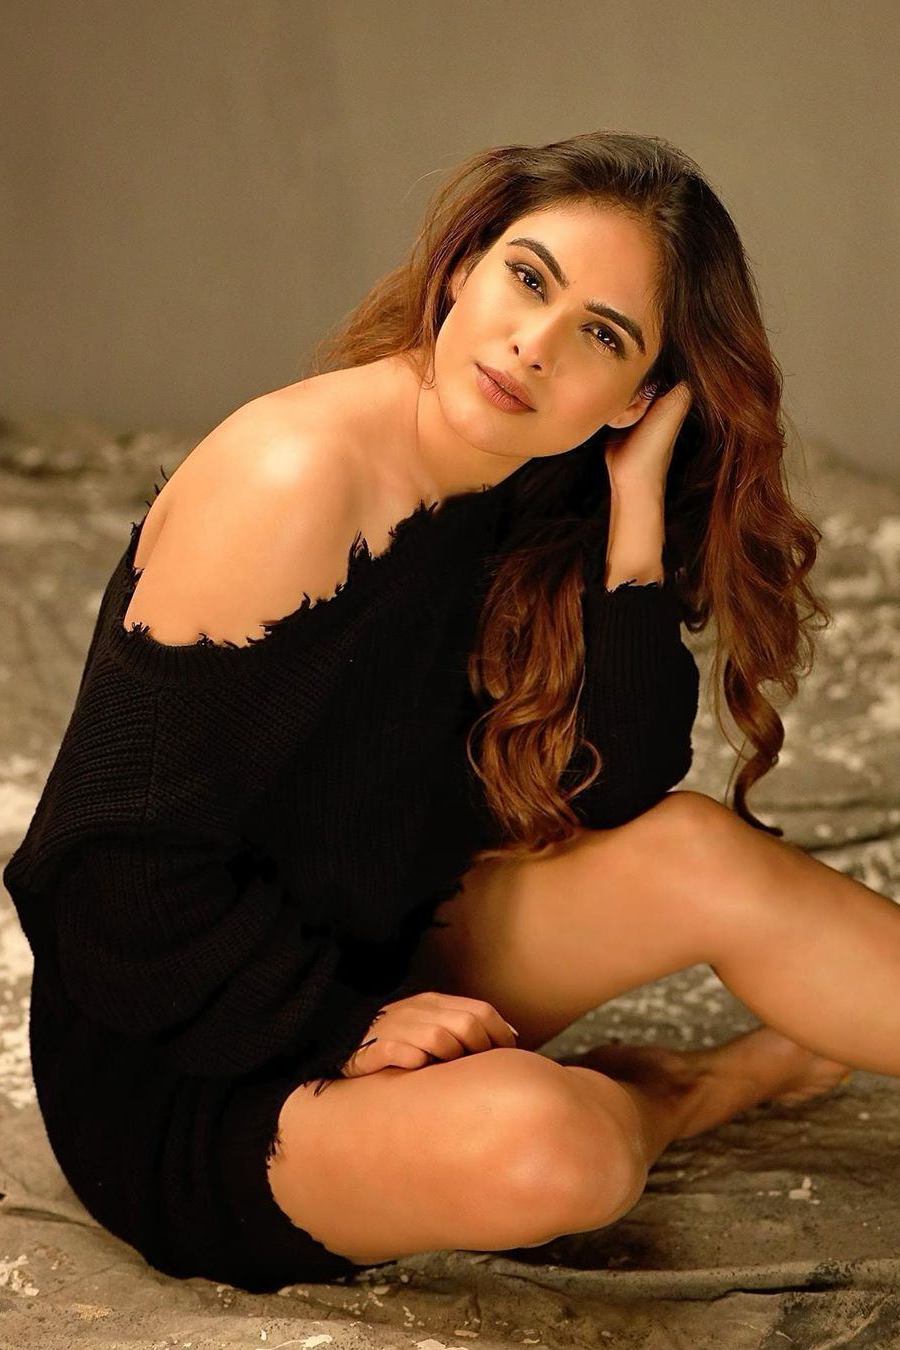 NehaMalik, Indian, Model, Actress, Photos